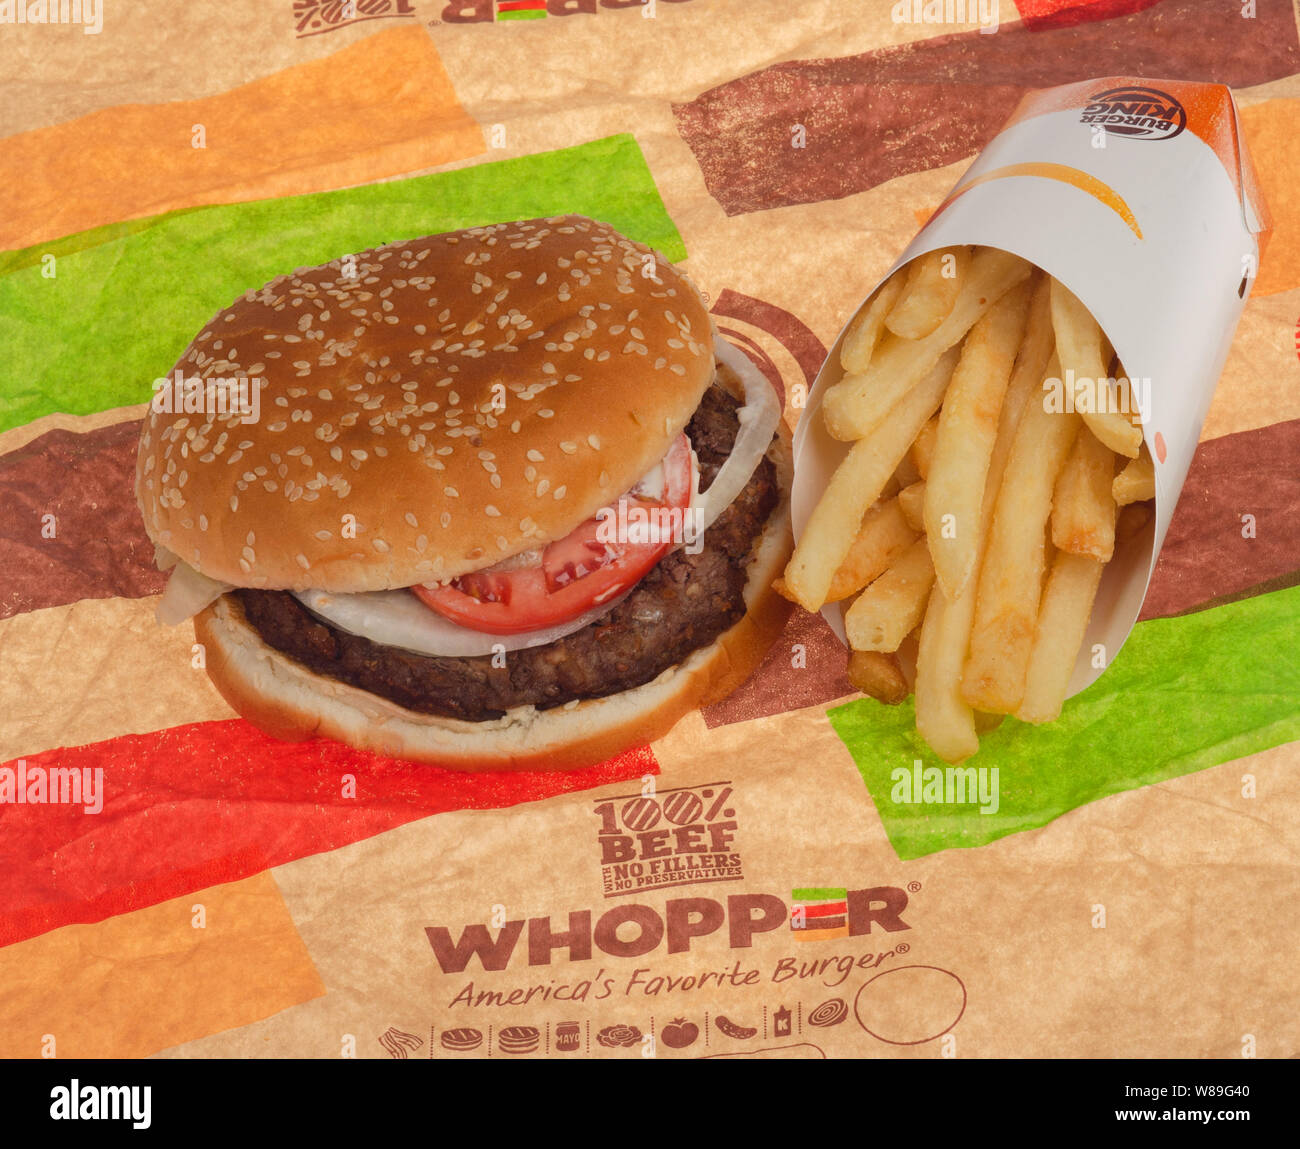 Burger King Whopper Beff avec frites sur l'emballage Banque D'Images